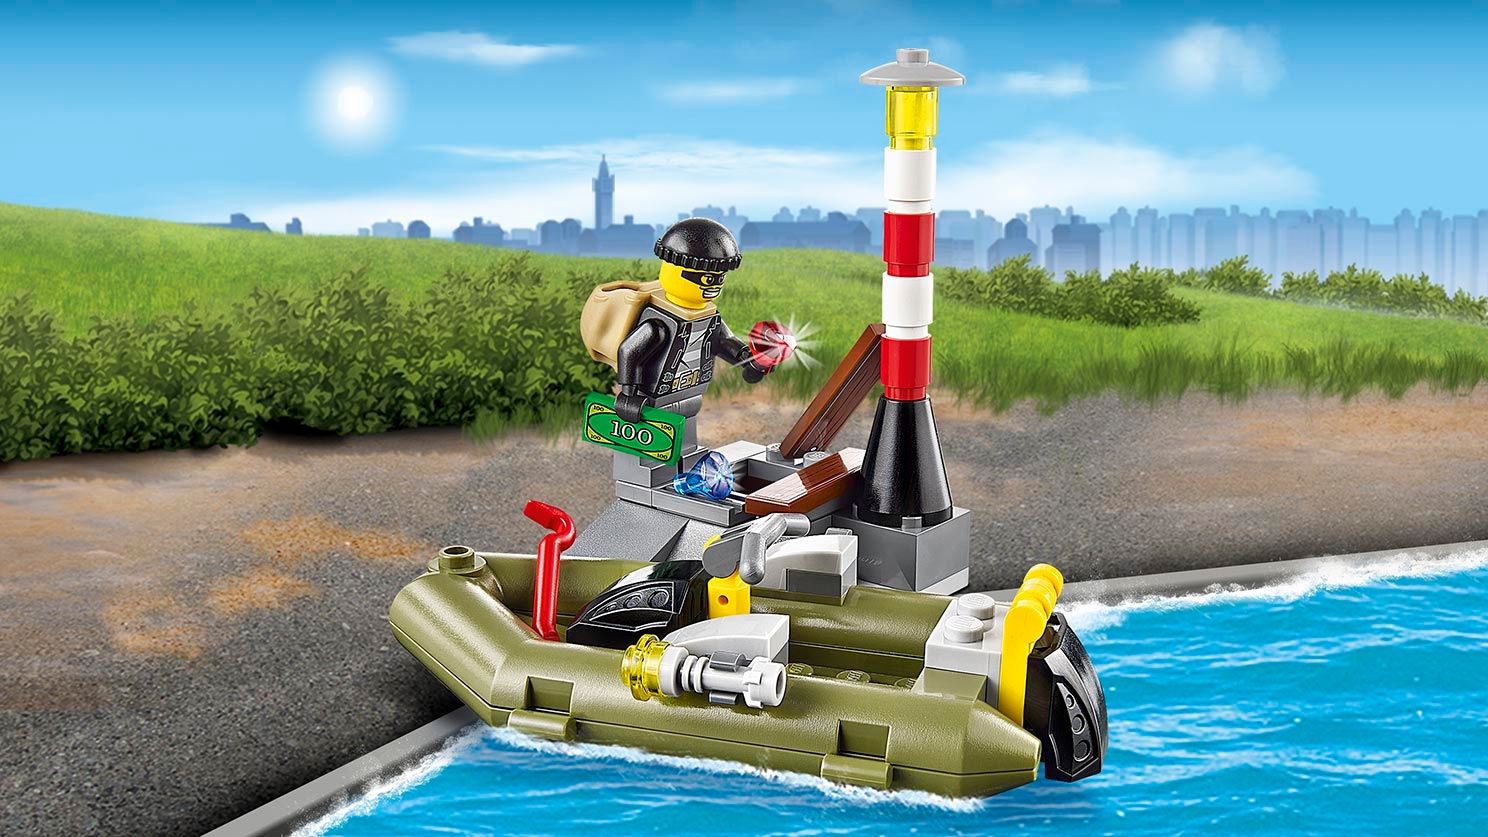 Police Patrol Lego City Sets Lego Com For Kids